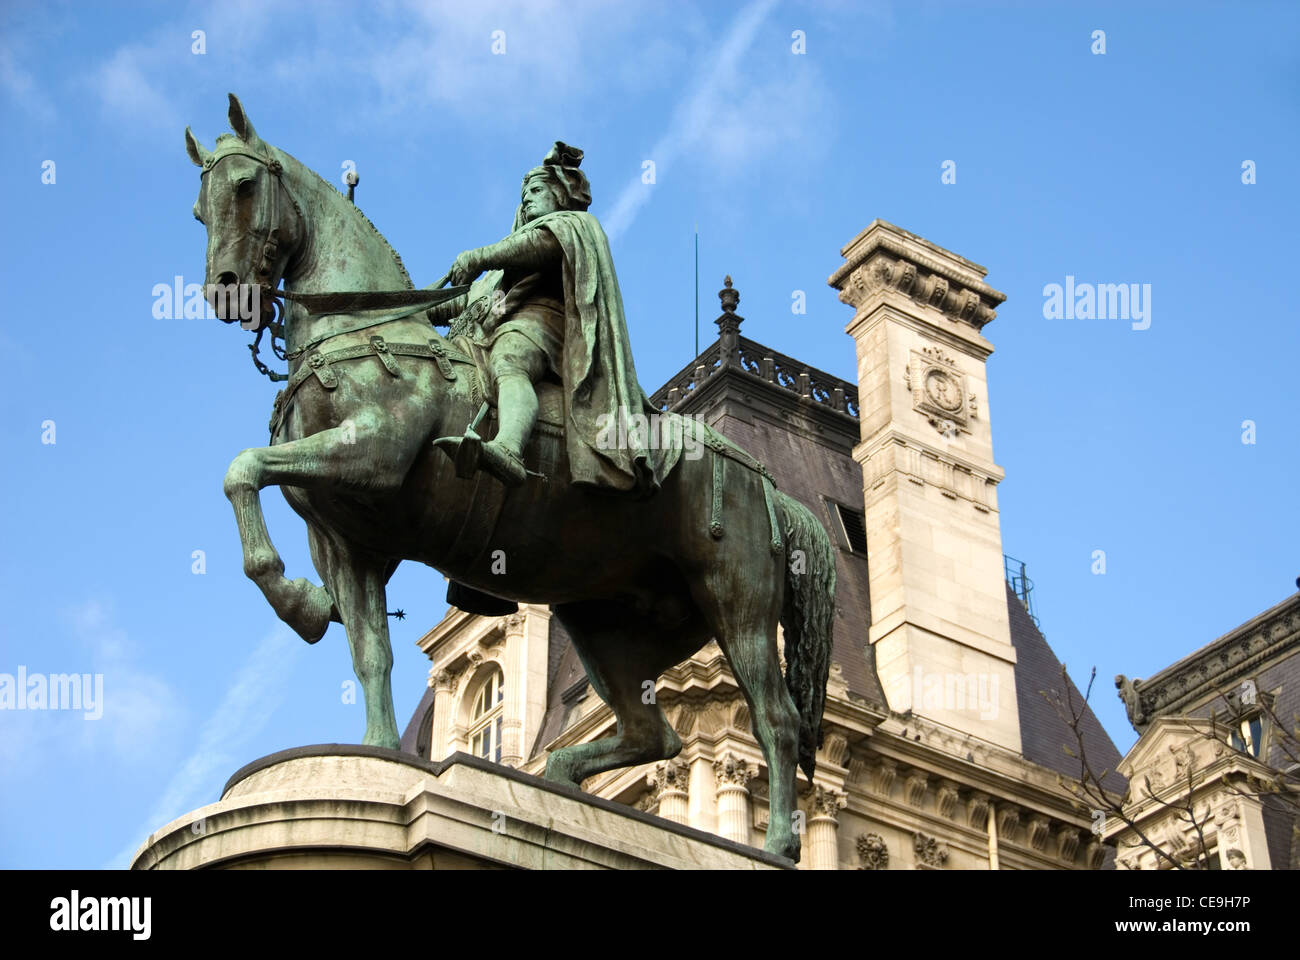 A statue of Etienne Marcel outside the Hotel de Ville, Paris, France Stock Photo